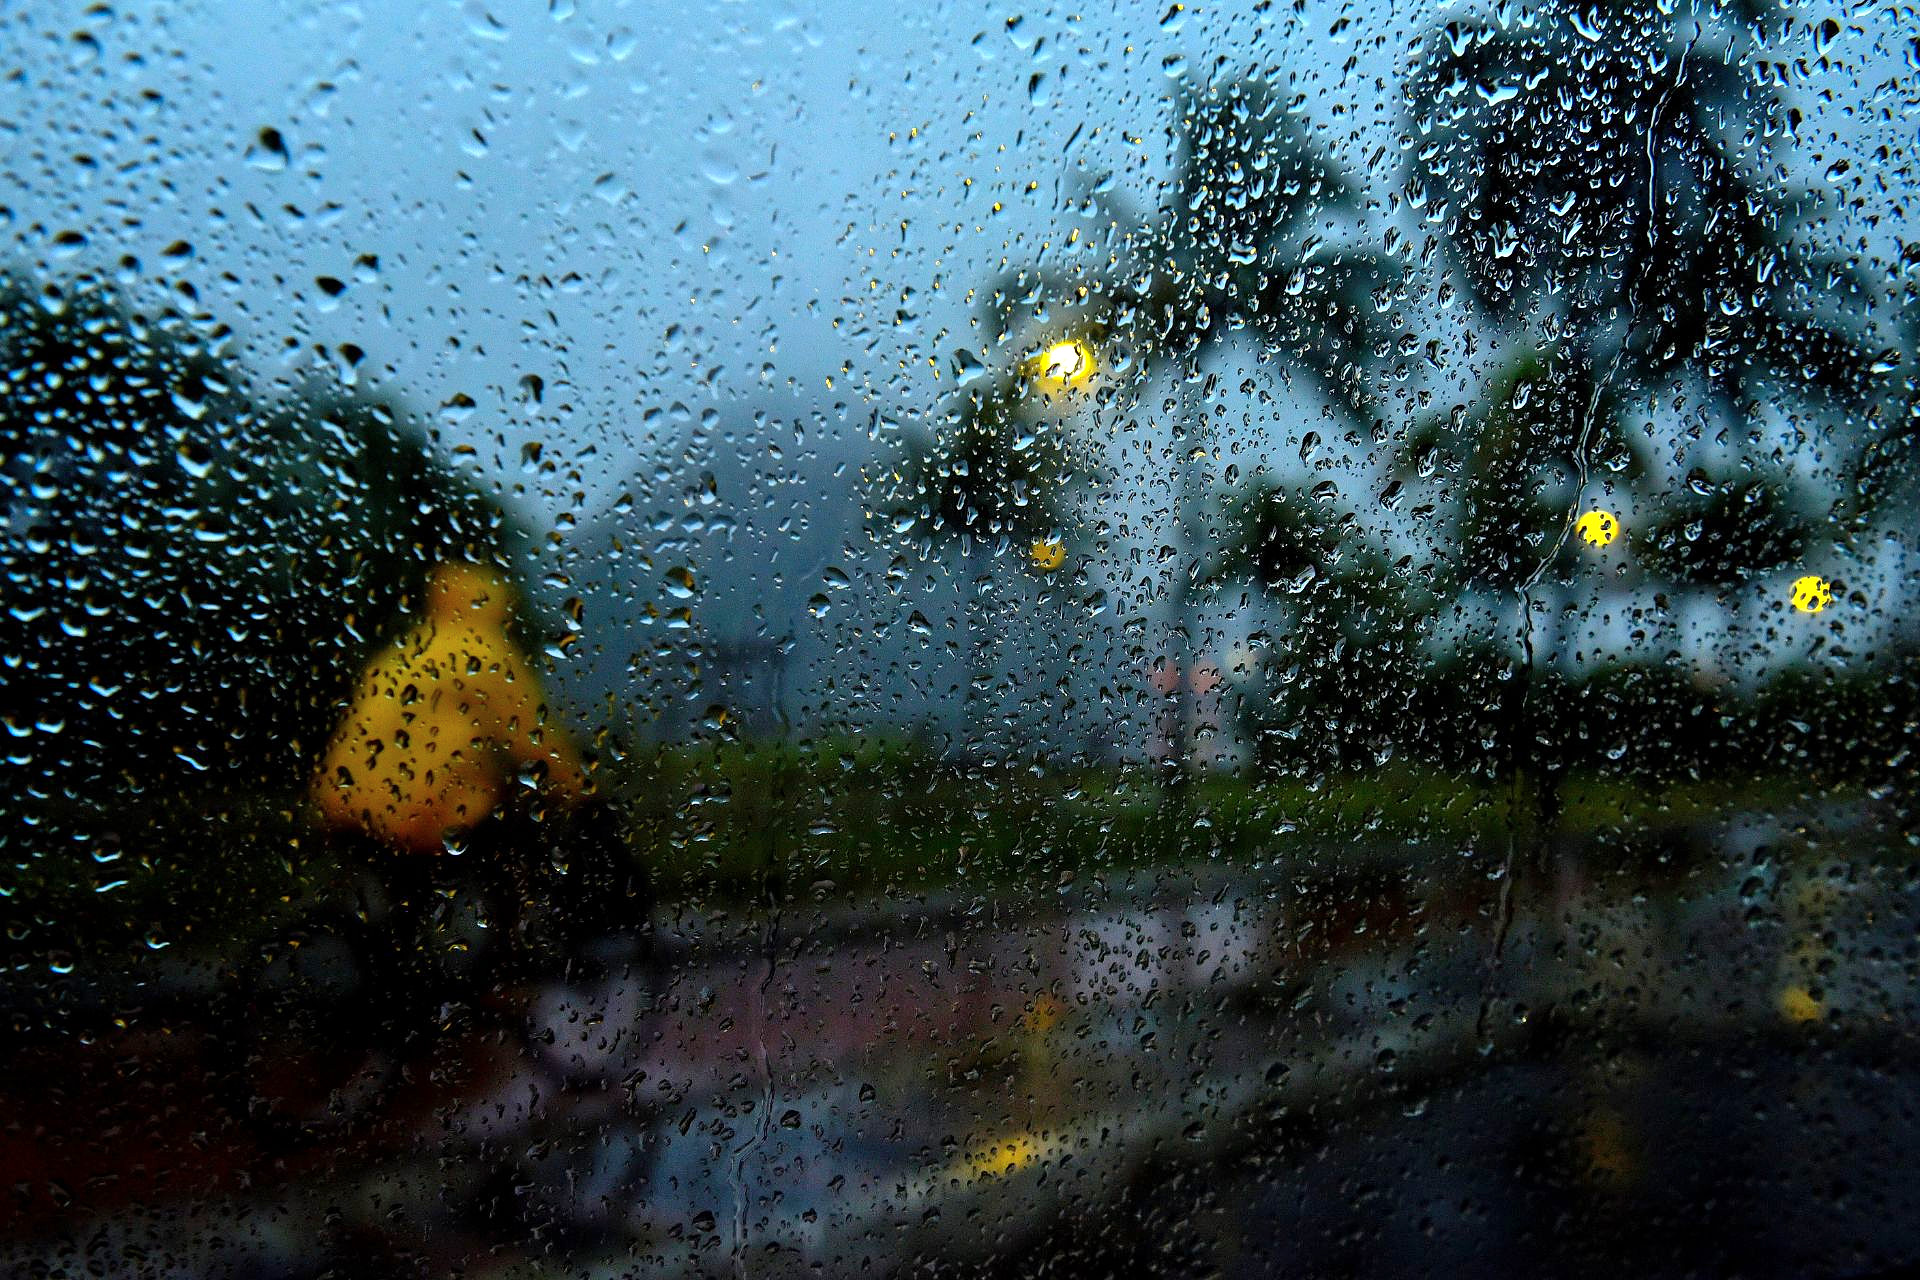 Ensaio fotográfico utilizando como primeiro plano as gotas de água da chuva no vidro do carro - Avenida Beira Mar, em Vitória, ES